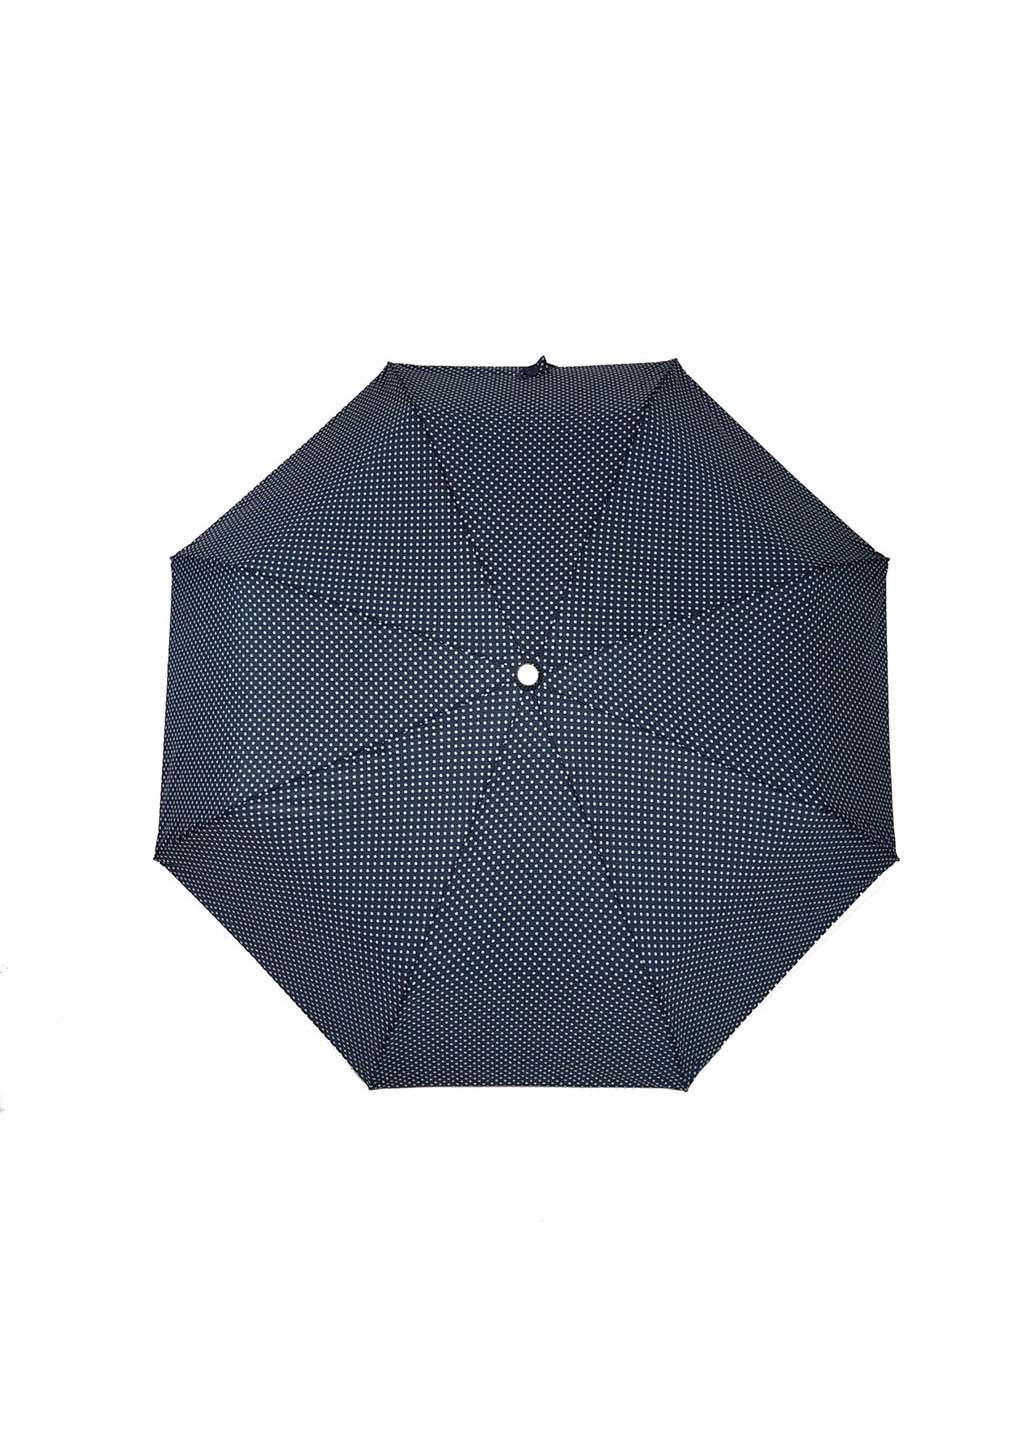 Зонт SL 35013-4 складной синий